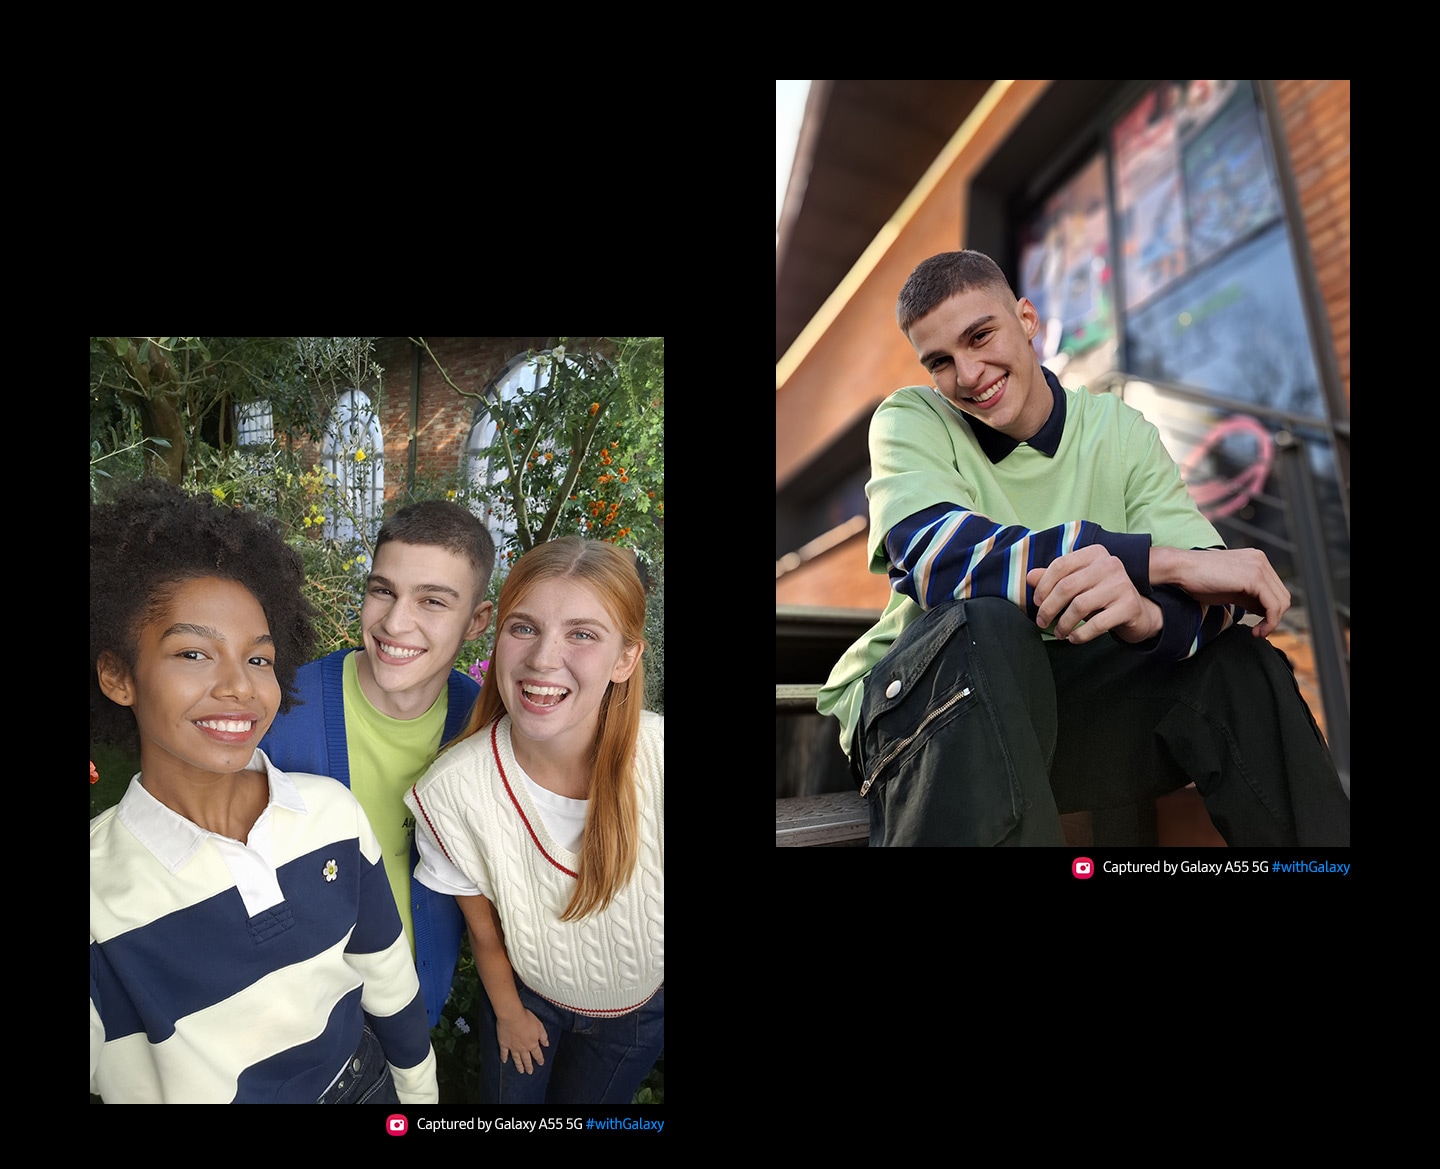 Hai bức chân dung của mọi người. Chân dung đầu tiên: Bức ảnh selfie của ba người bạn với biểu cảm vui vẻ, tạo dáng gần nhau. Bức chân dung thứ hai được chụp bằng chế độ Chân dung : Một người đang ngồi thản nhiên mỉm cười, một tòa nhà mờ ở hậu cảnh. Dòng chữ Được chụp bởi Galaxy A55 5G #withGalaxy.